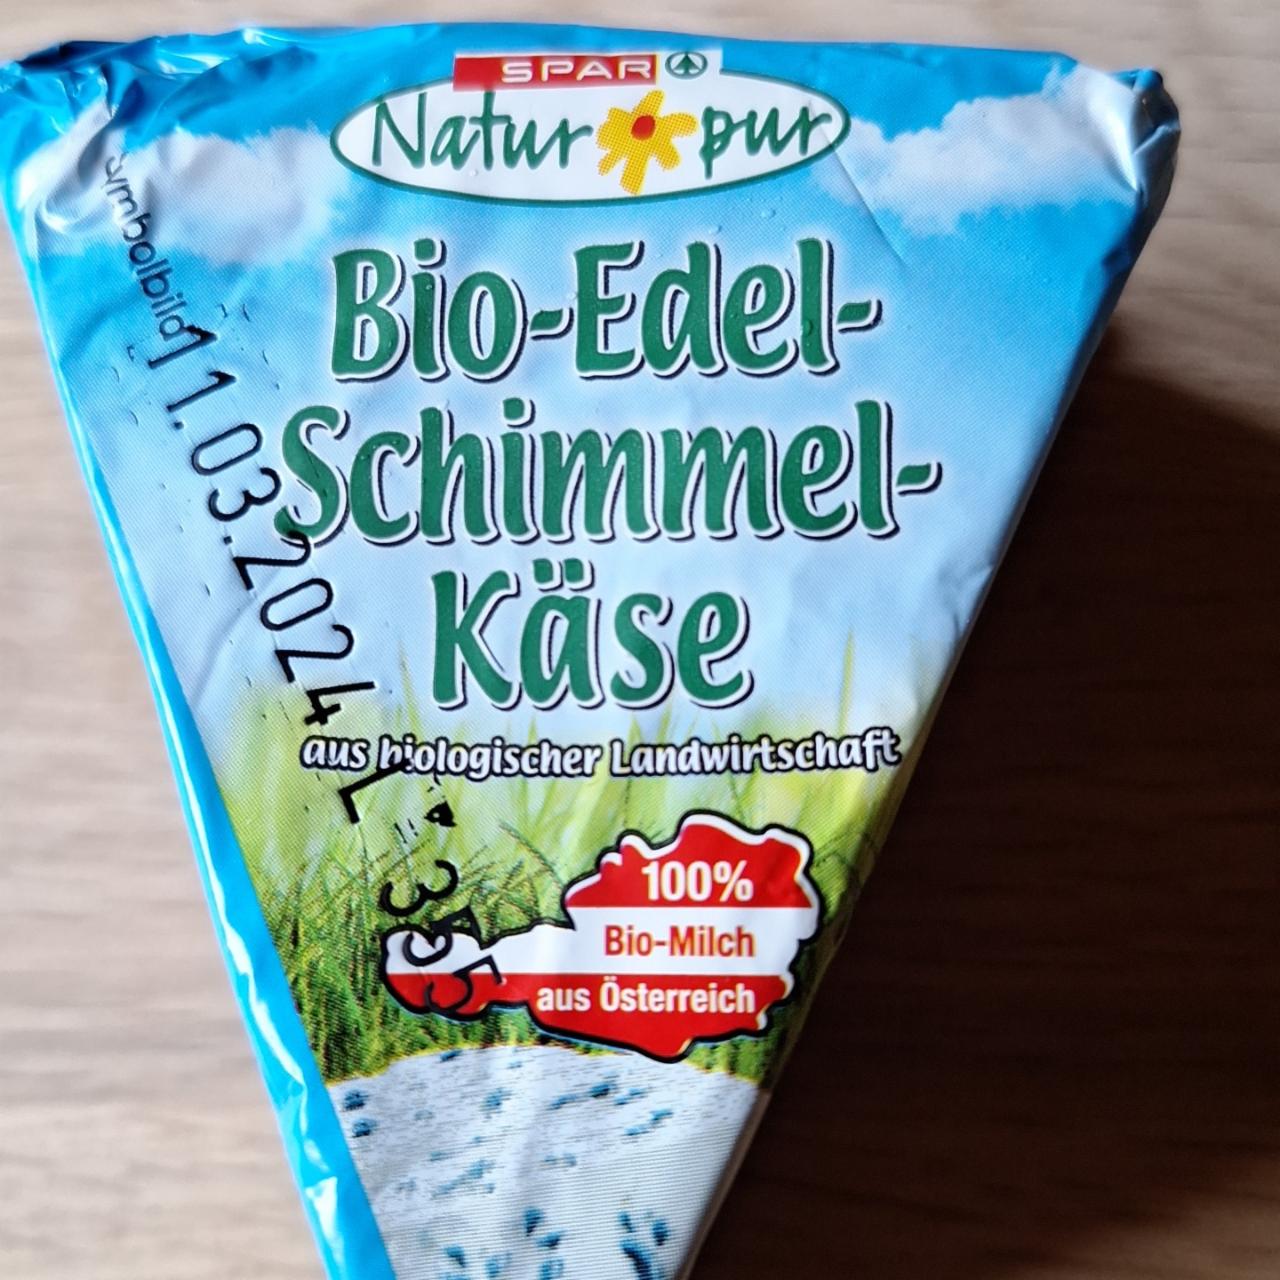 Fotografie - Bio-Edel-Schimmel-Käse Spar Natur pur